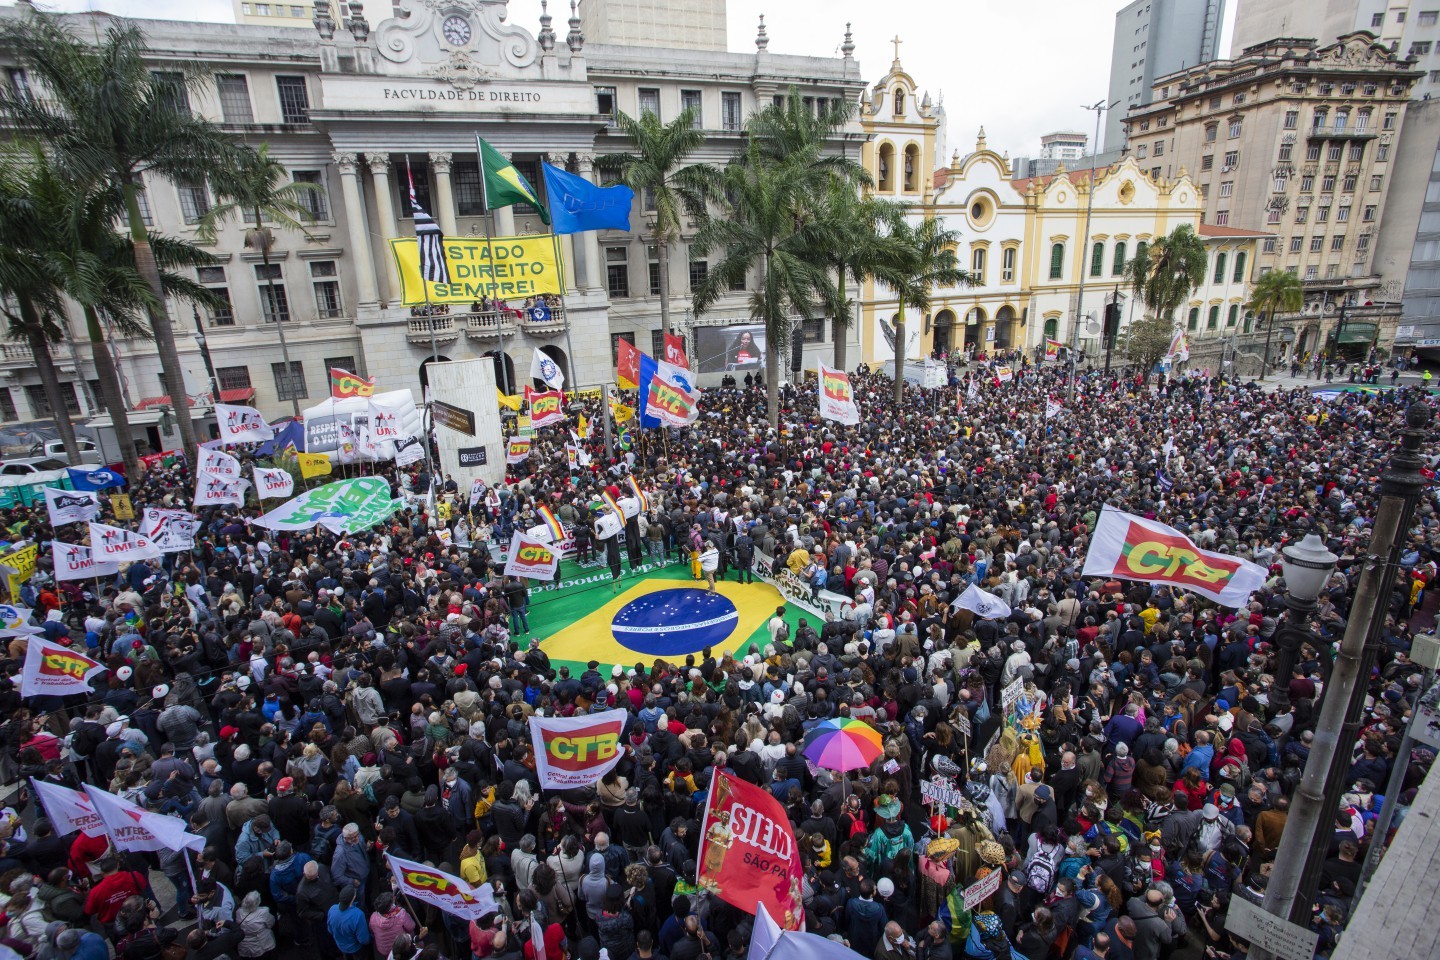 Multidão se reúne em defesa da democracia e do Estado de Direito na Faculdade de Direito da Universidade de São Paulo, no Largo São Francisco. — Foto: Edilson Dantas / Agência O Globo